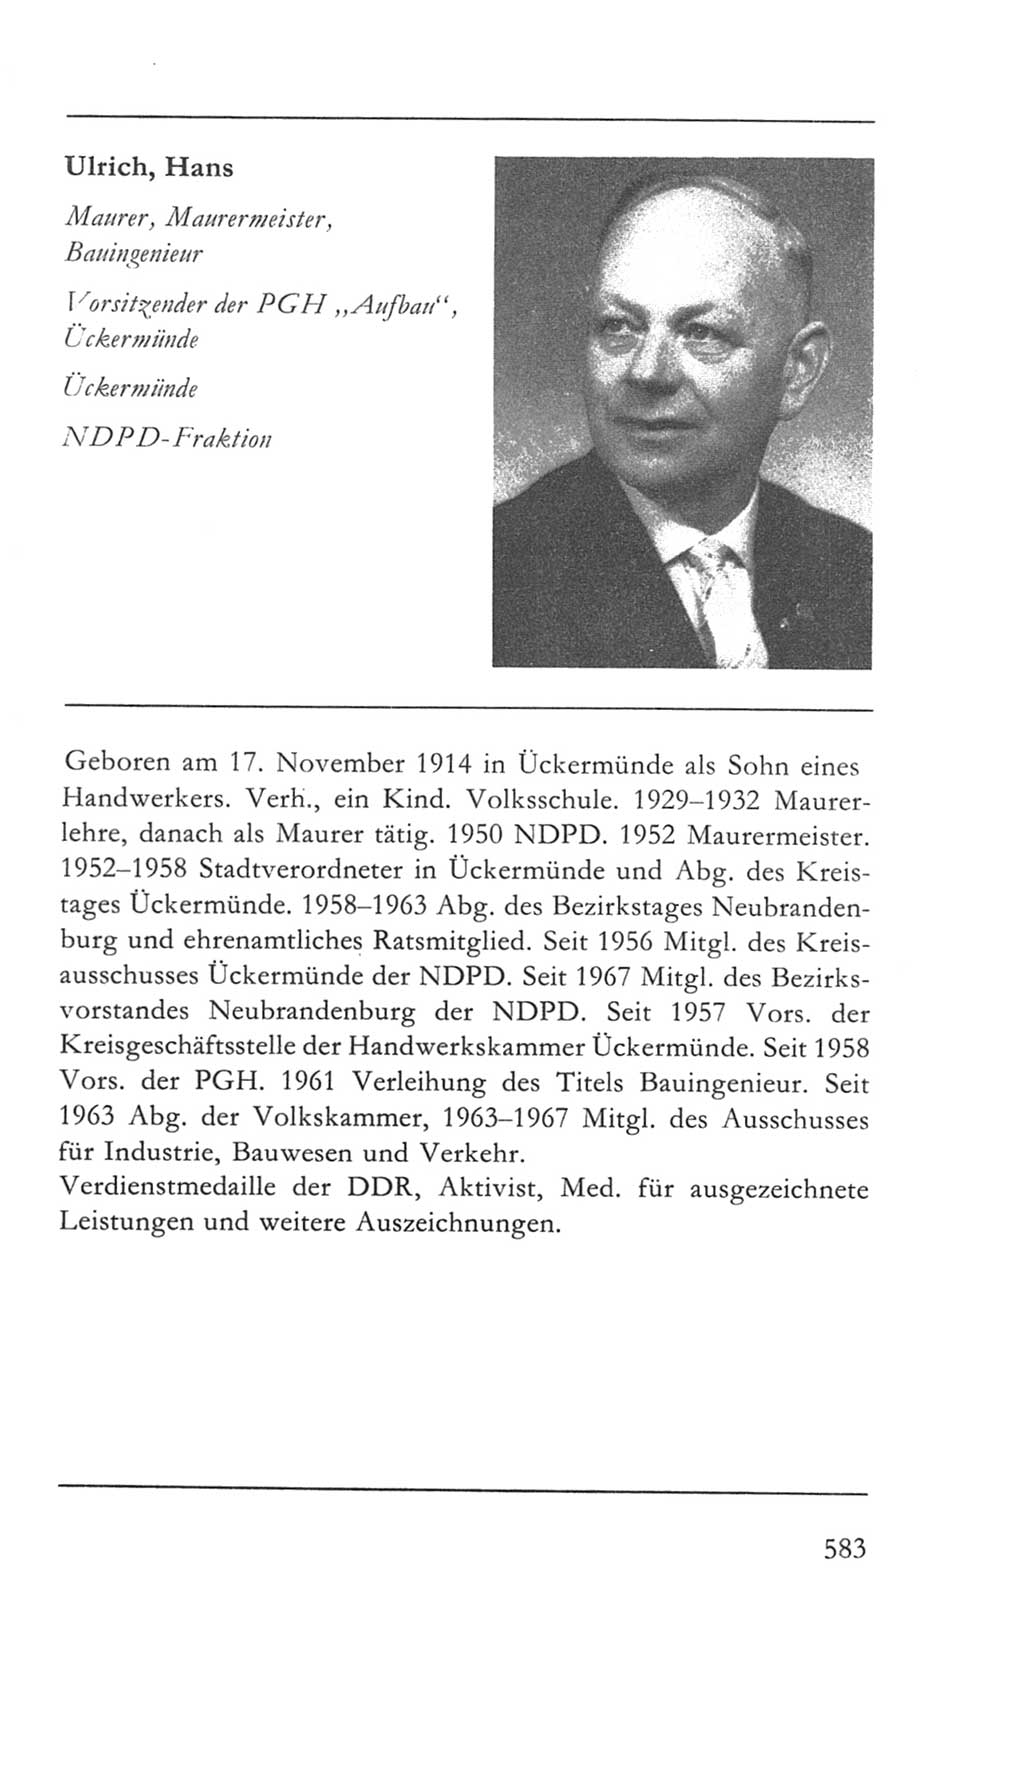 Volkskammer (VK) der Deutschen Demokratischen Republik (DDR) 5. Wahlperiode 1967-1971, Seite 583 (VK. DDR 5. WP. 1967-1971, S. 583)